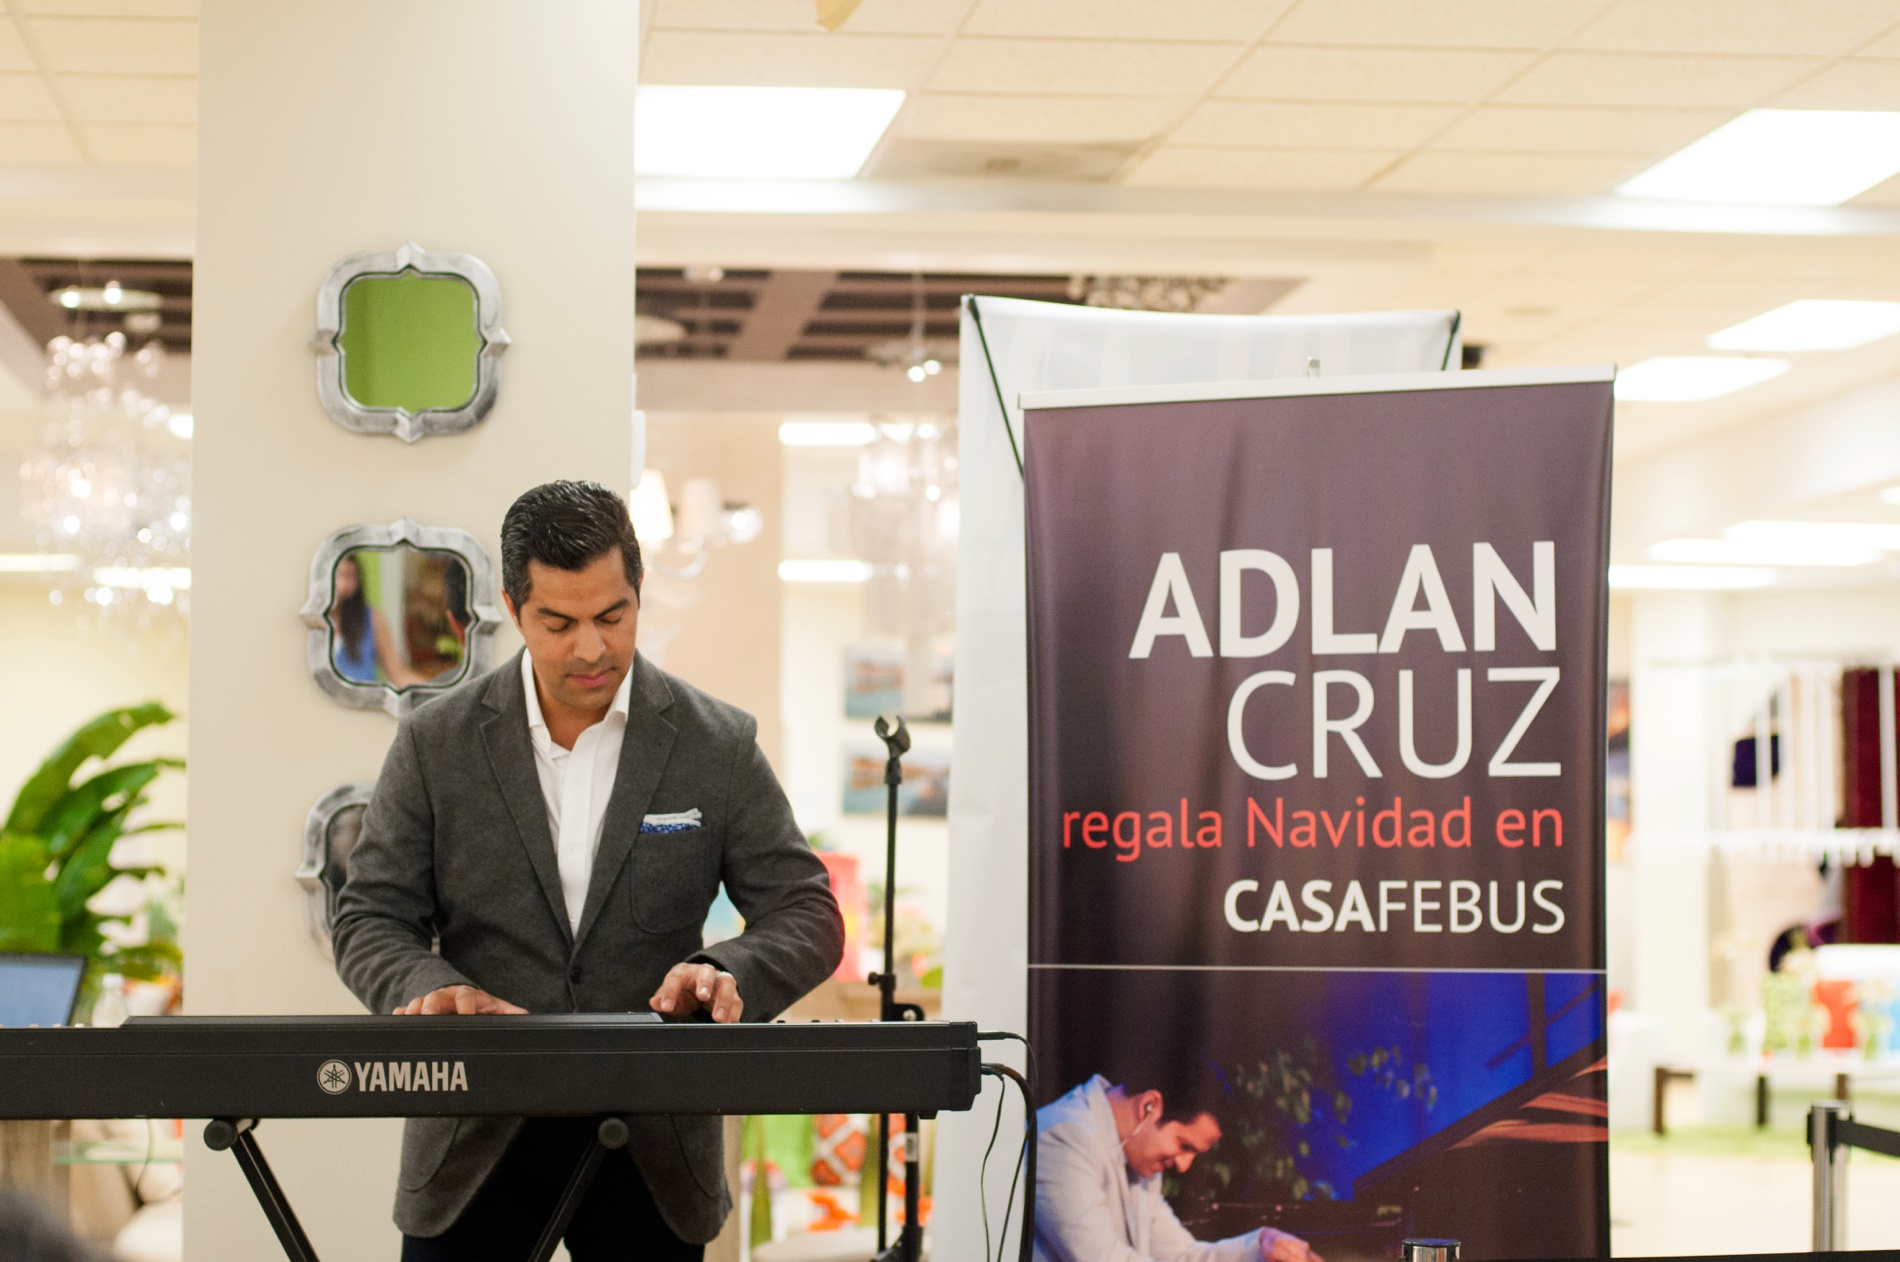 Gala de Navidad con el pianista Adlan Cruz en Casa Febus